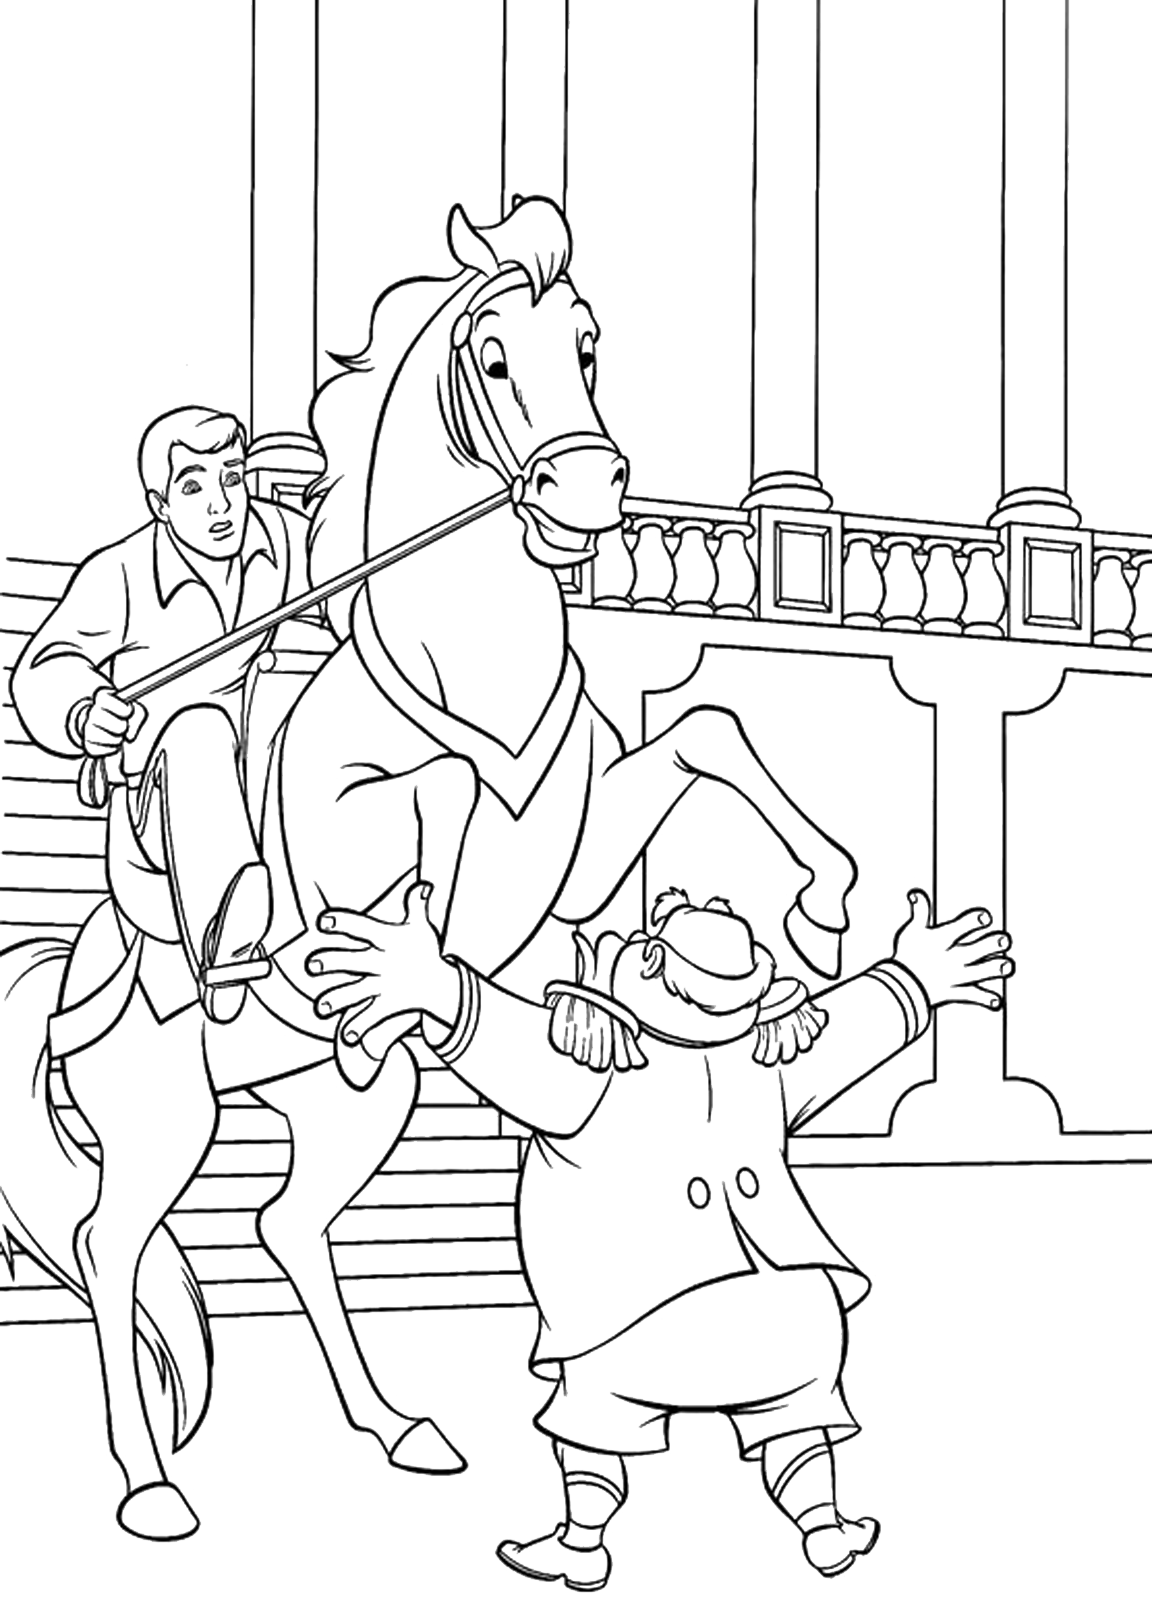 Cenerentola - Il Re si mette davanti al cavallo per fermare il Principe